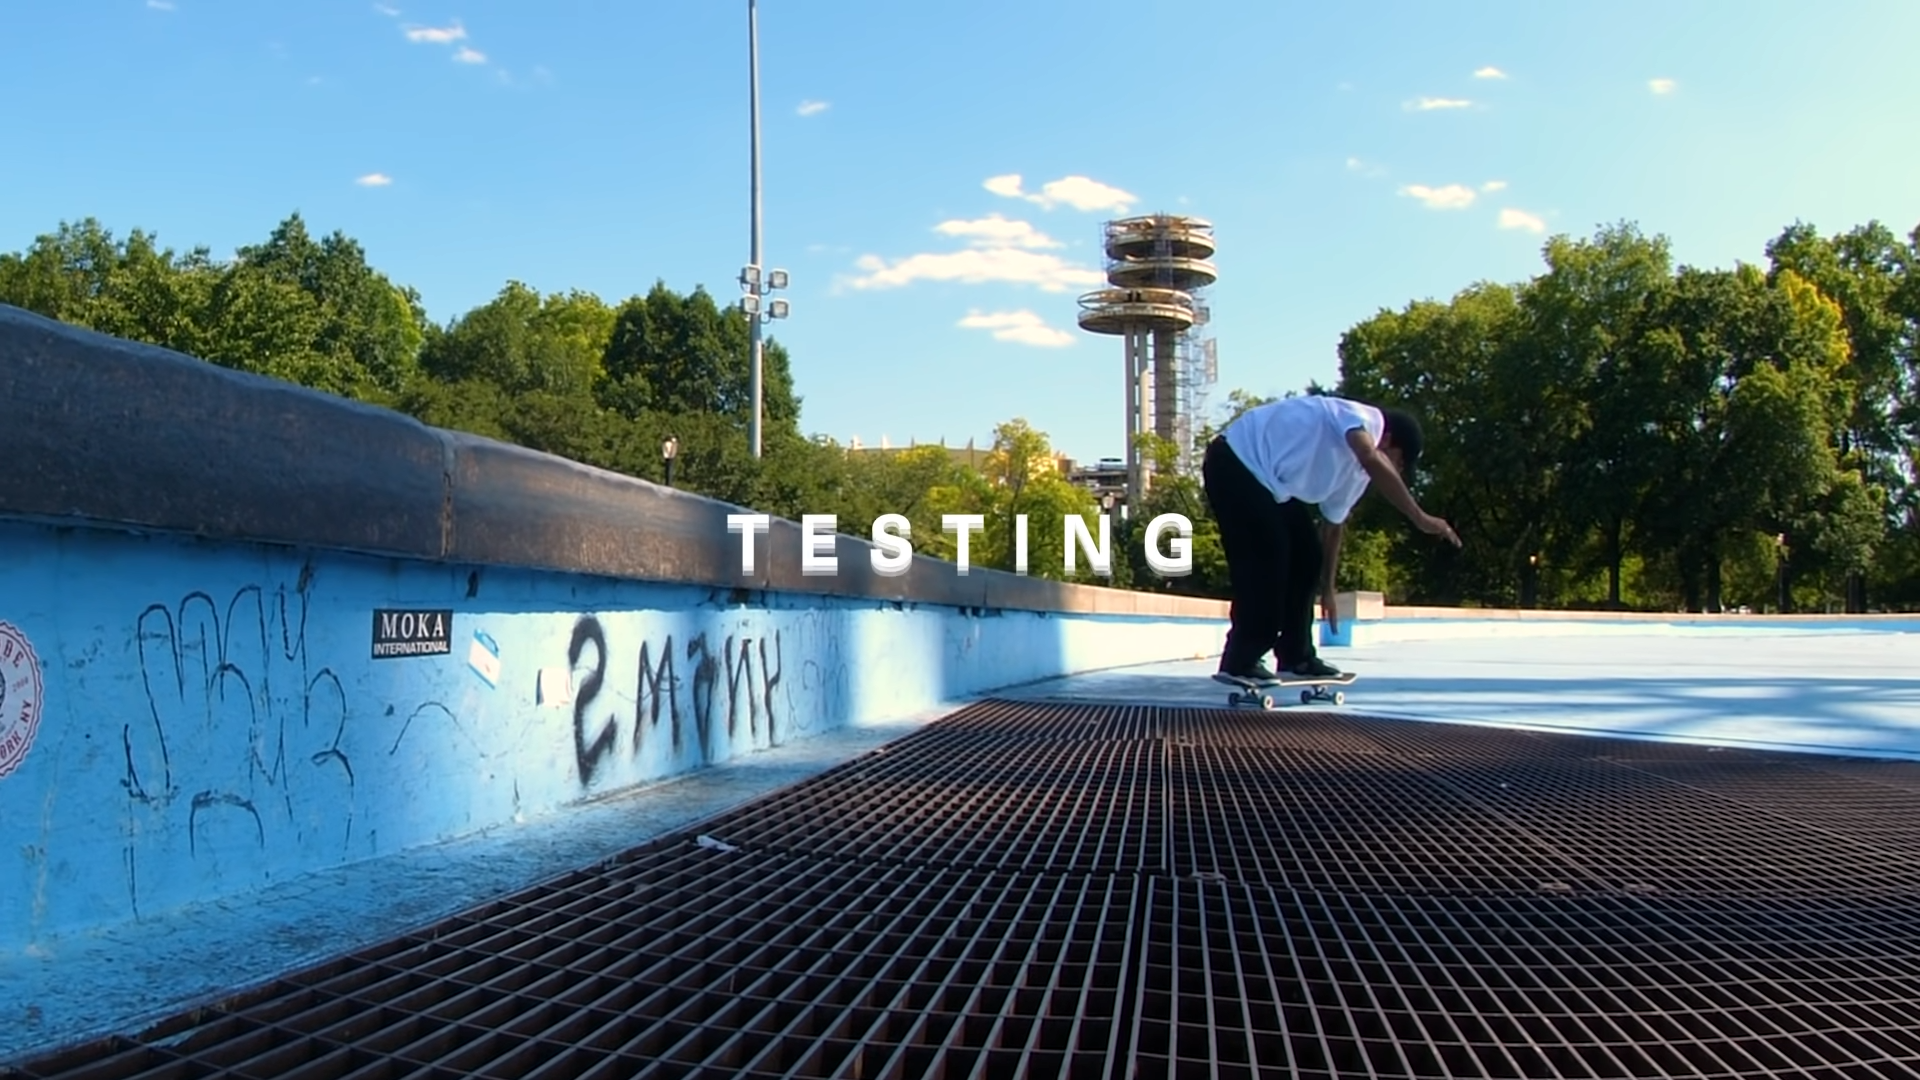 Testing 4 film cover by Primitive Skate